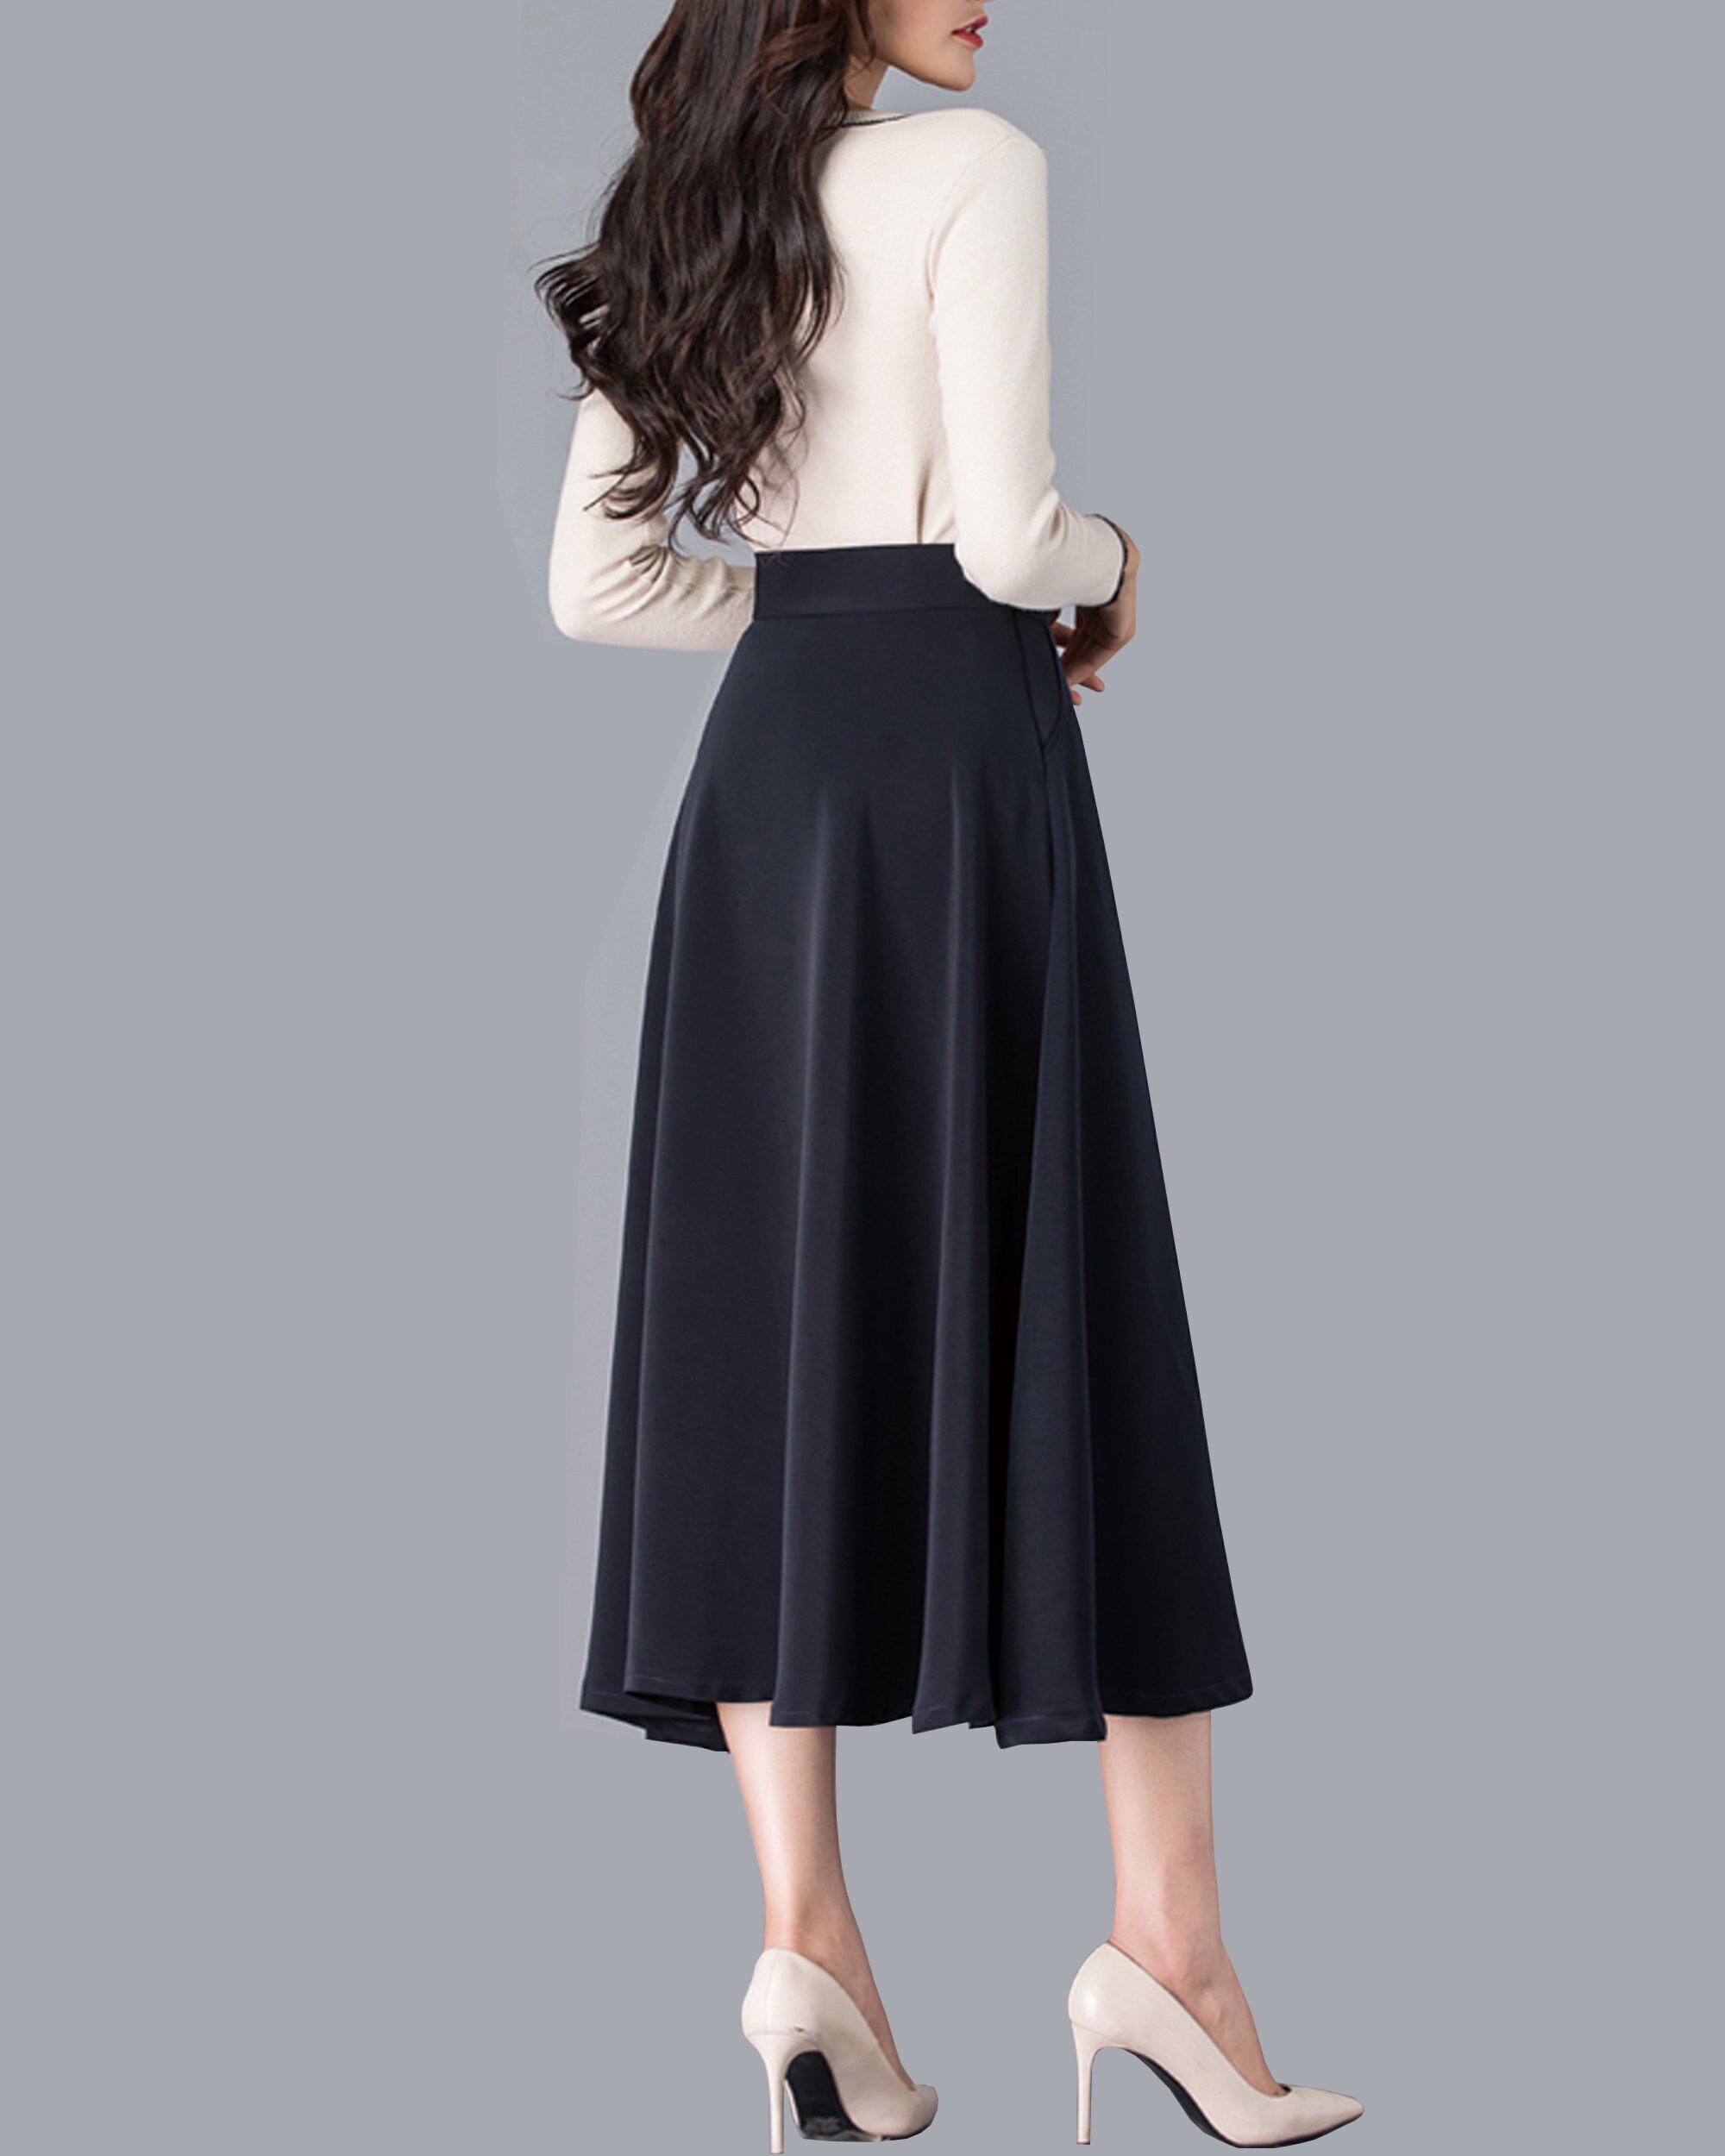 Midi Skirt Vintage Printed Skirt Black Skirt Custom Made - Etsy